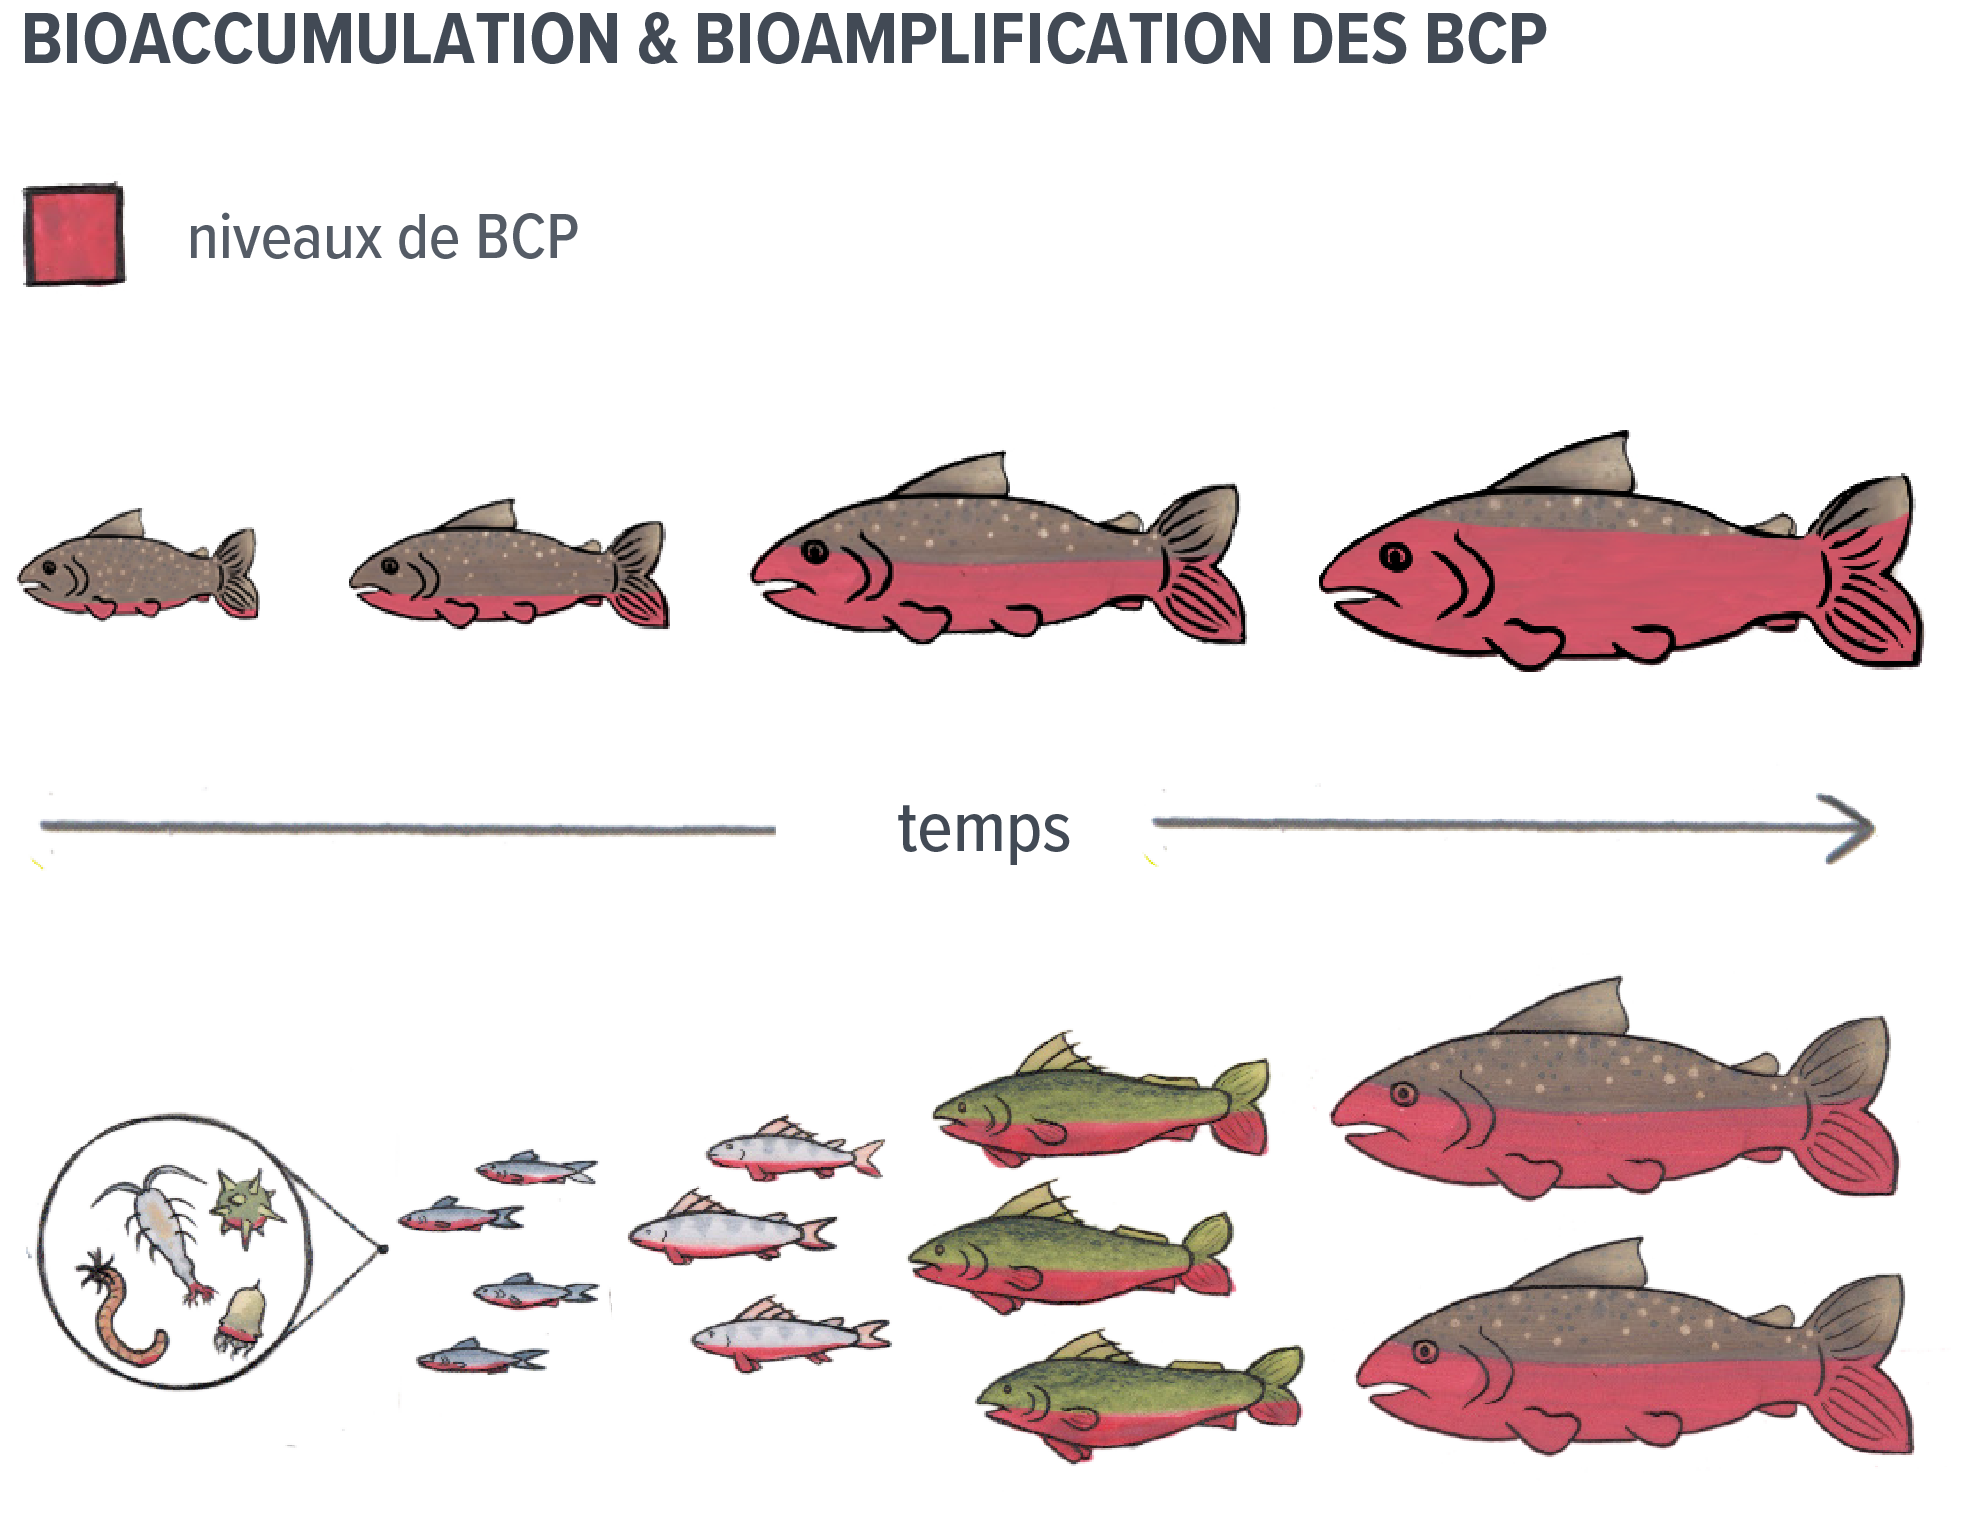 Dessin montrant les niveaux de BPC qui augmentent dans les poissons au fil du temps par bioaccumulation et bioamplification.